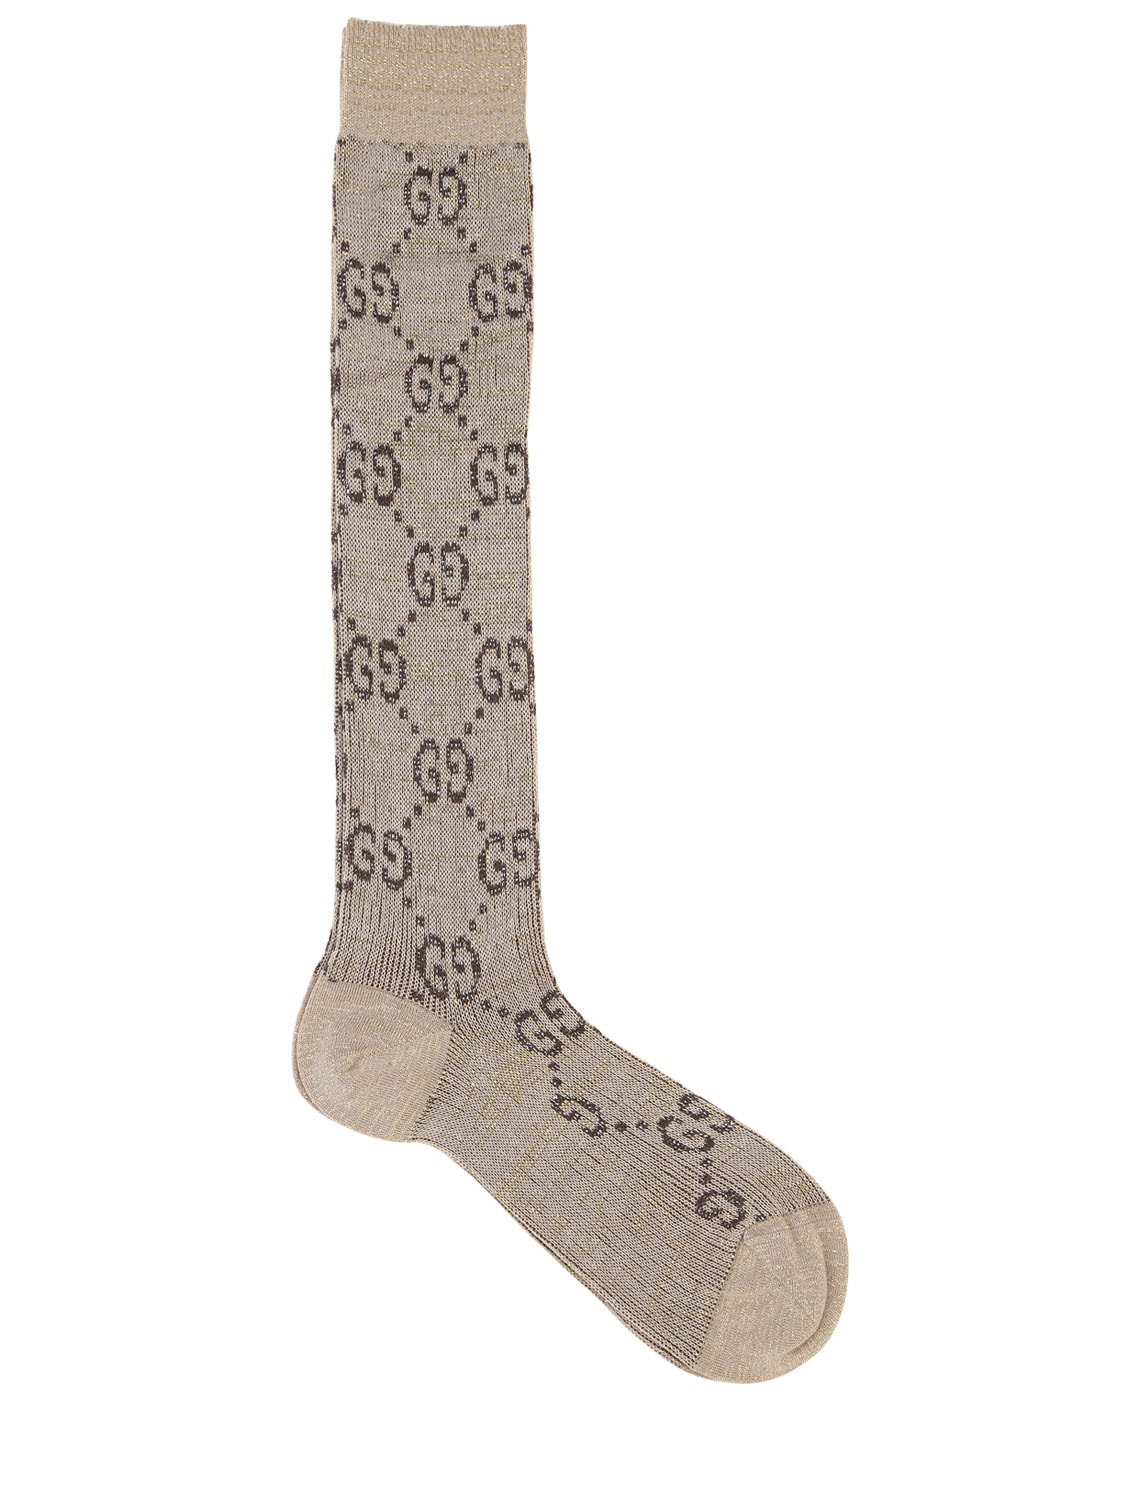 Gucci Gg Supreme Lurex Socks In Beige/brown